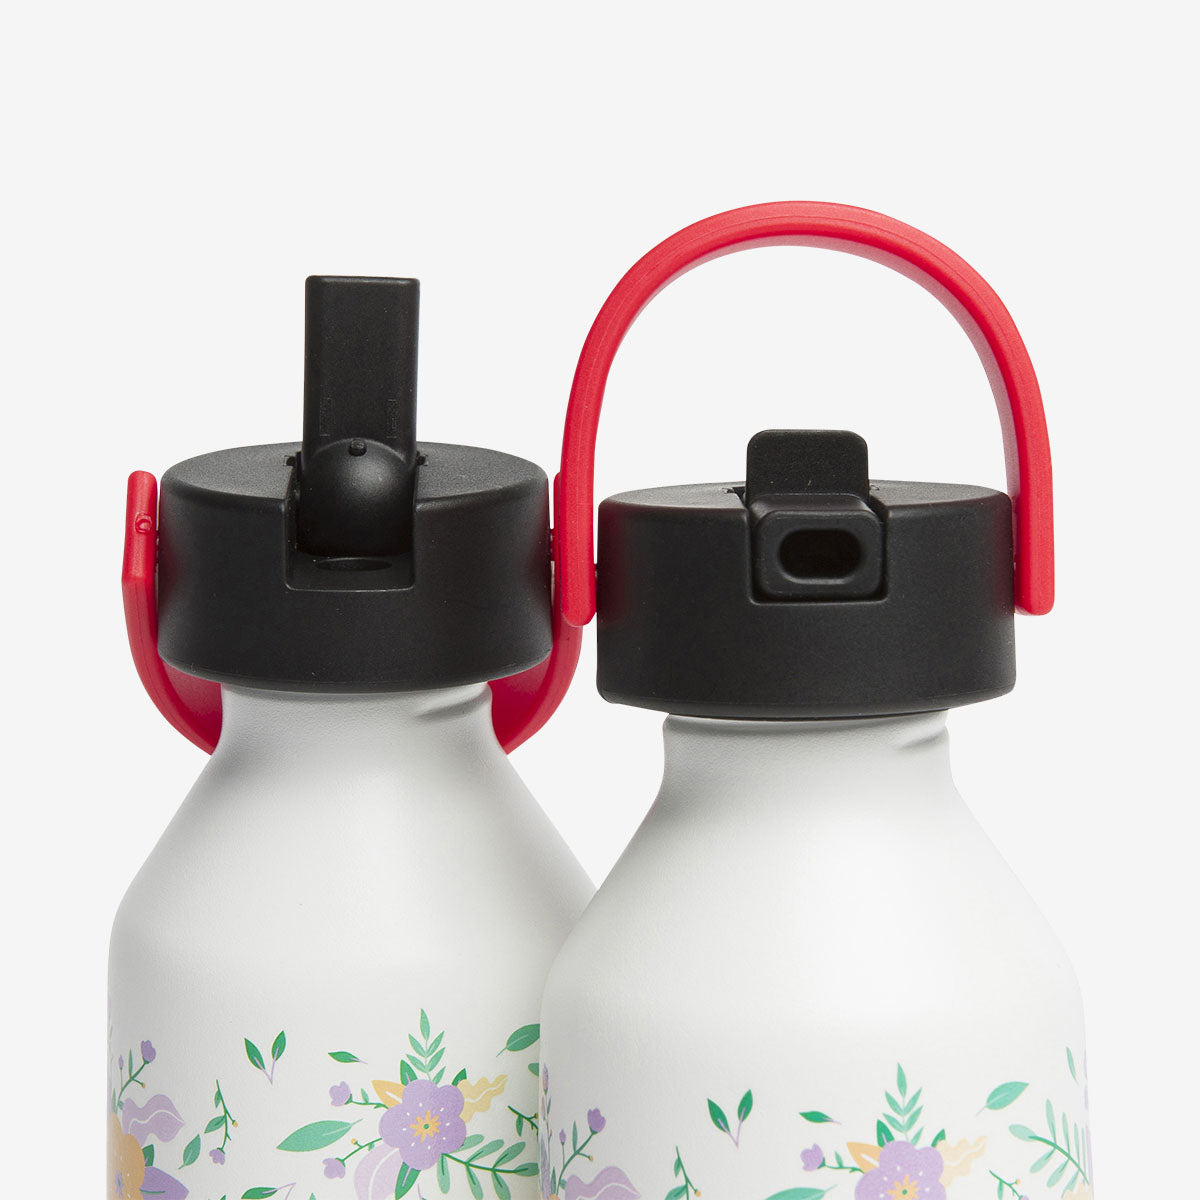 Hello Hossy Kids Water Bottle – Flowers